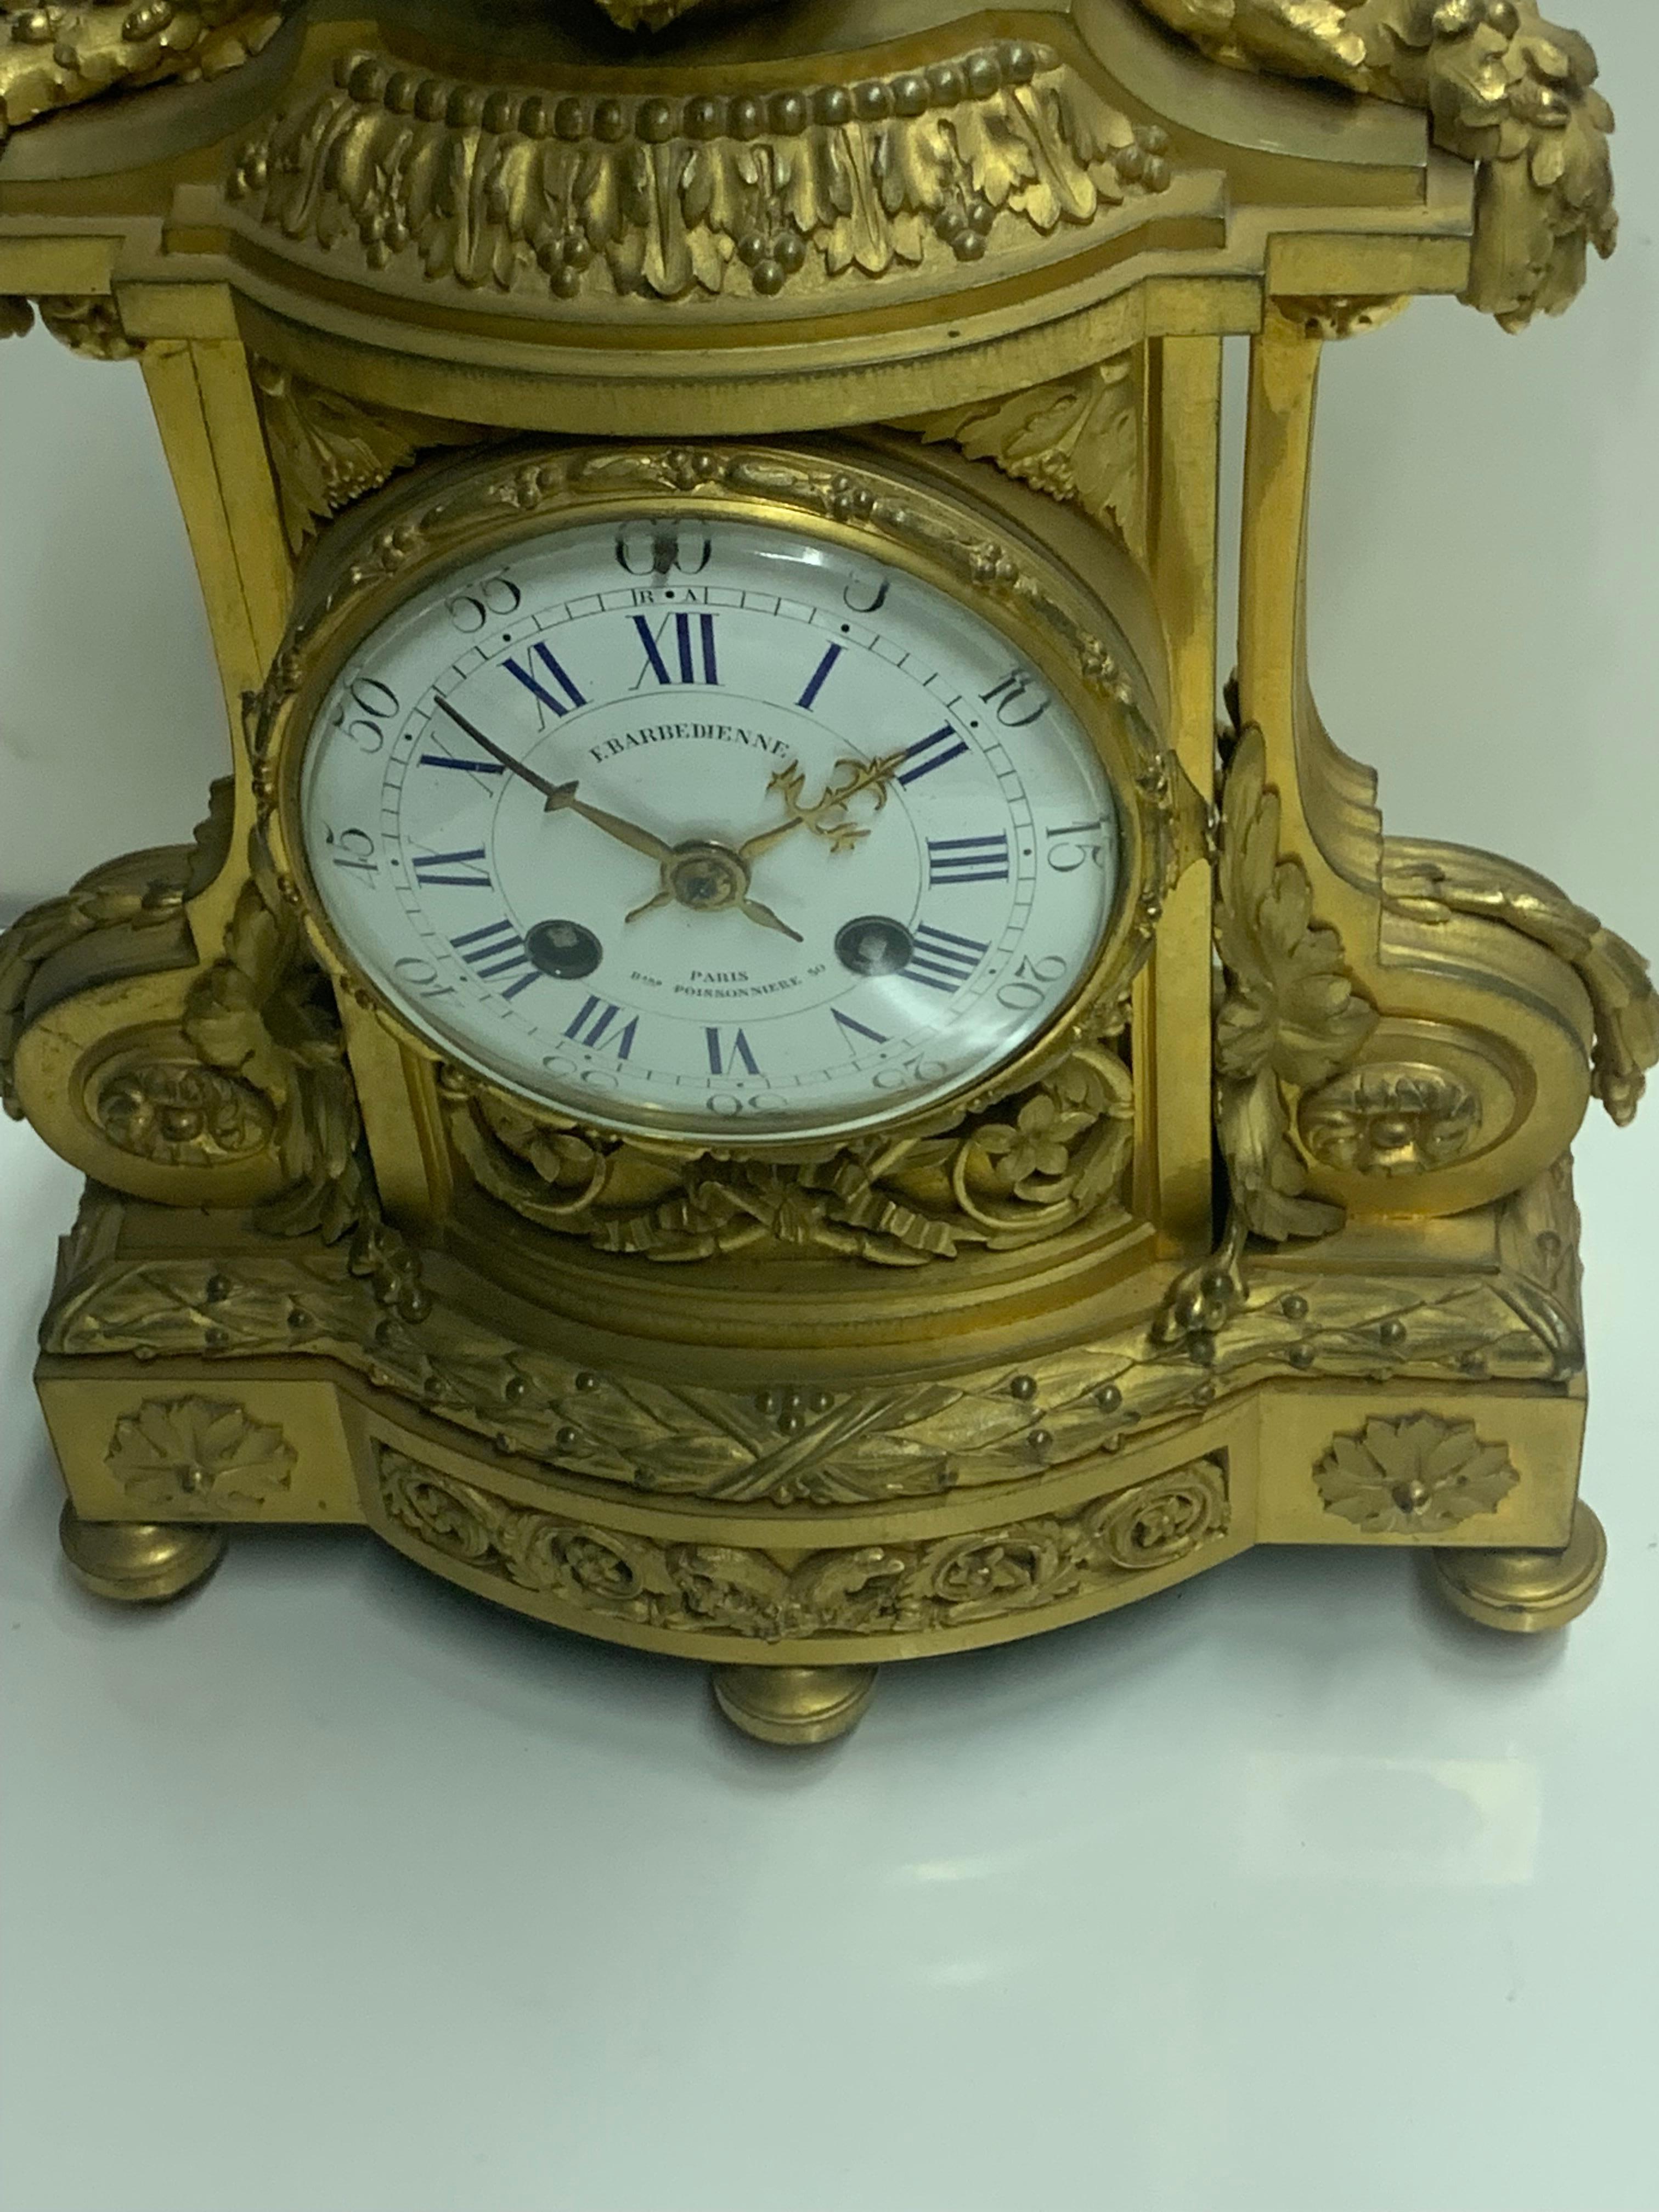 Une très belle  horloge en bronze réalisée par  F.BARBEDIENNE style Louis XVI de très haute qualité
le cadran de l'horloge est en émail, et il est remarquablement exécuté par l'un des meilleurs bronziers de cette période parisienne